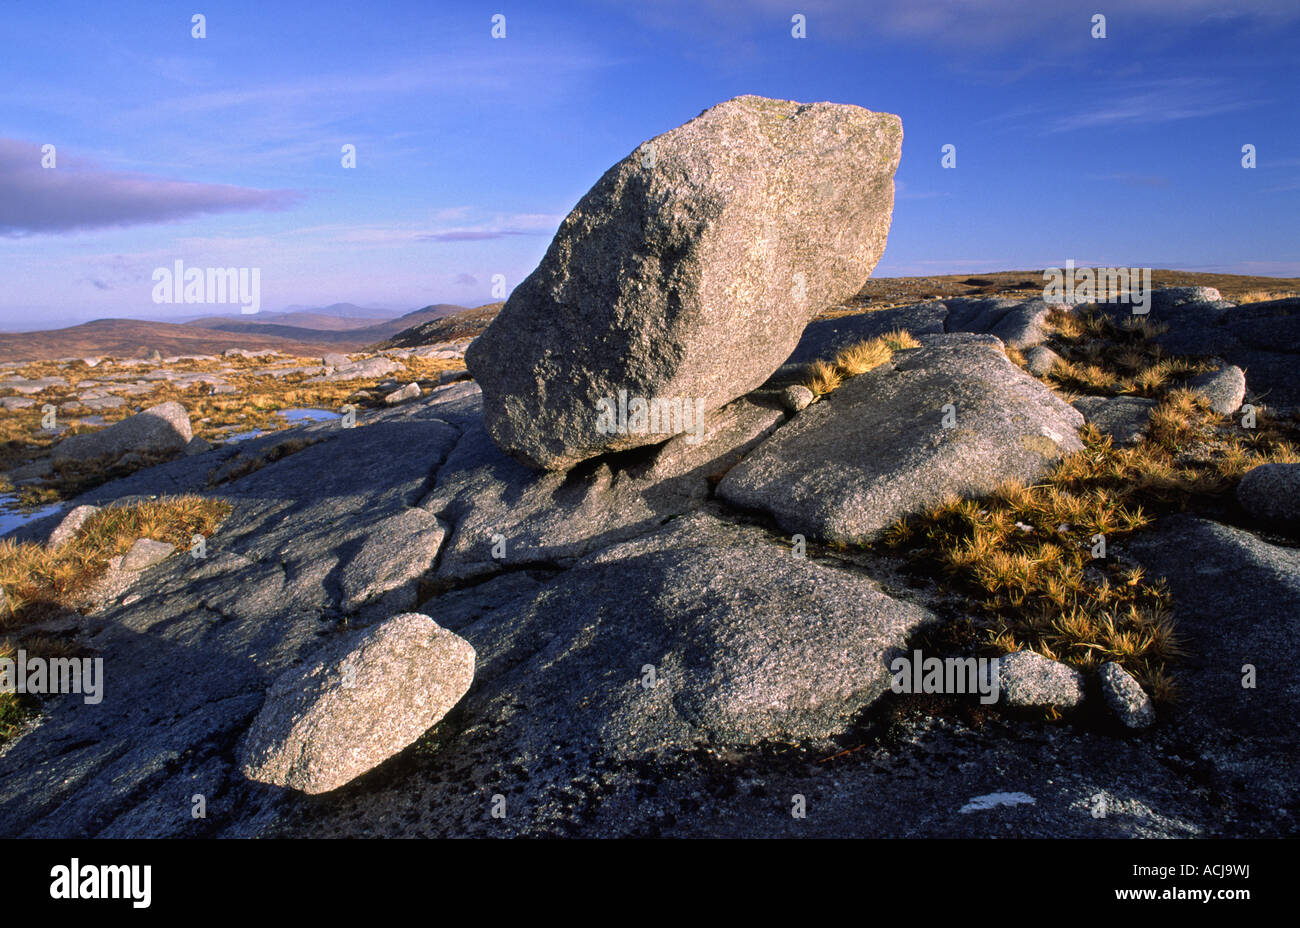 Bloc erratique de granite près du sommet d'Moylenanav, montagne montagnes Glendowan, comté de Donegal, Irlande. Banque D'Images